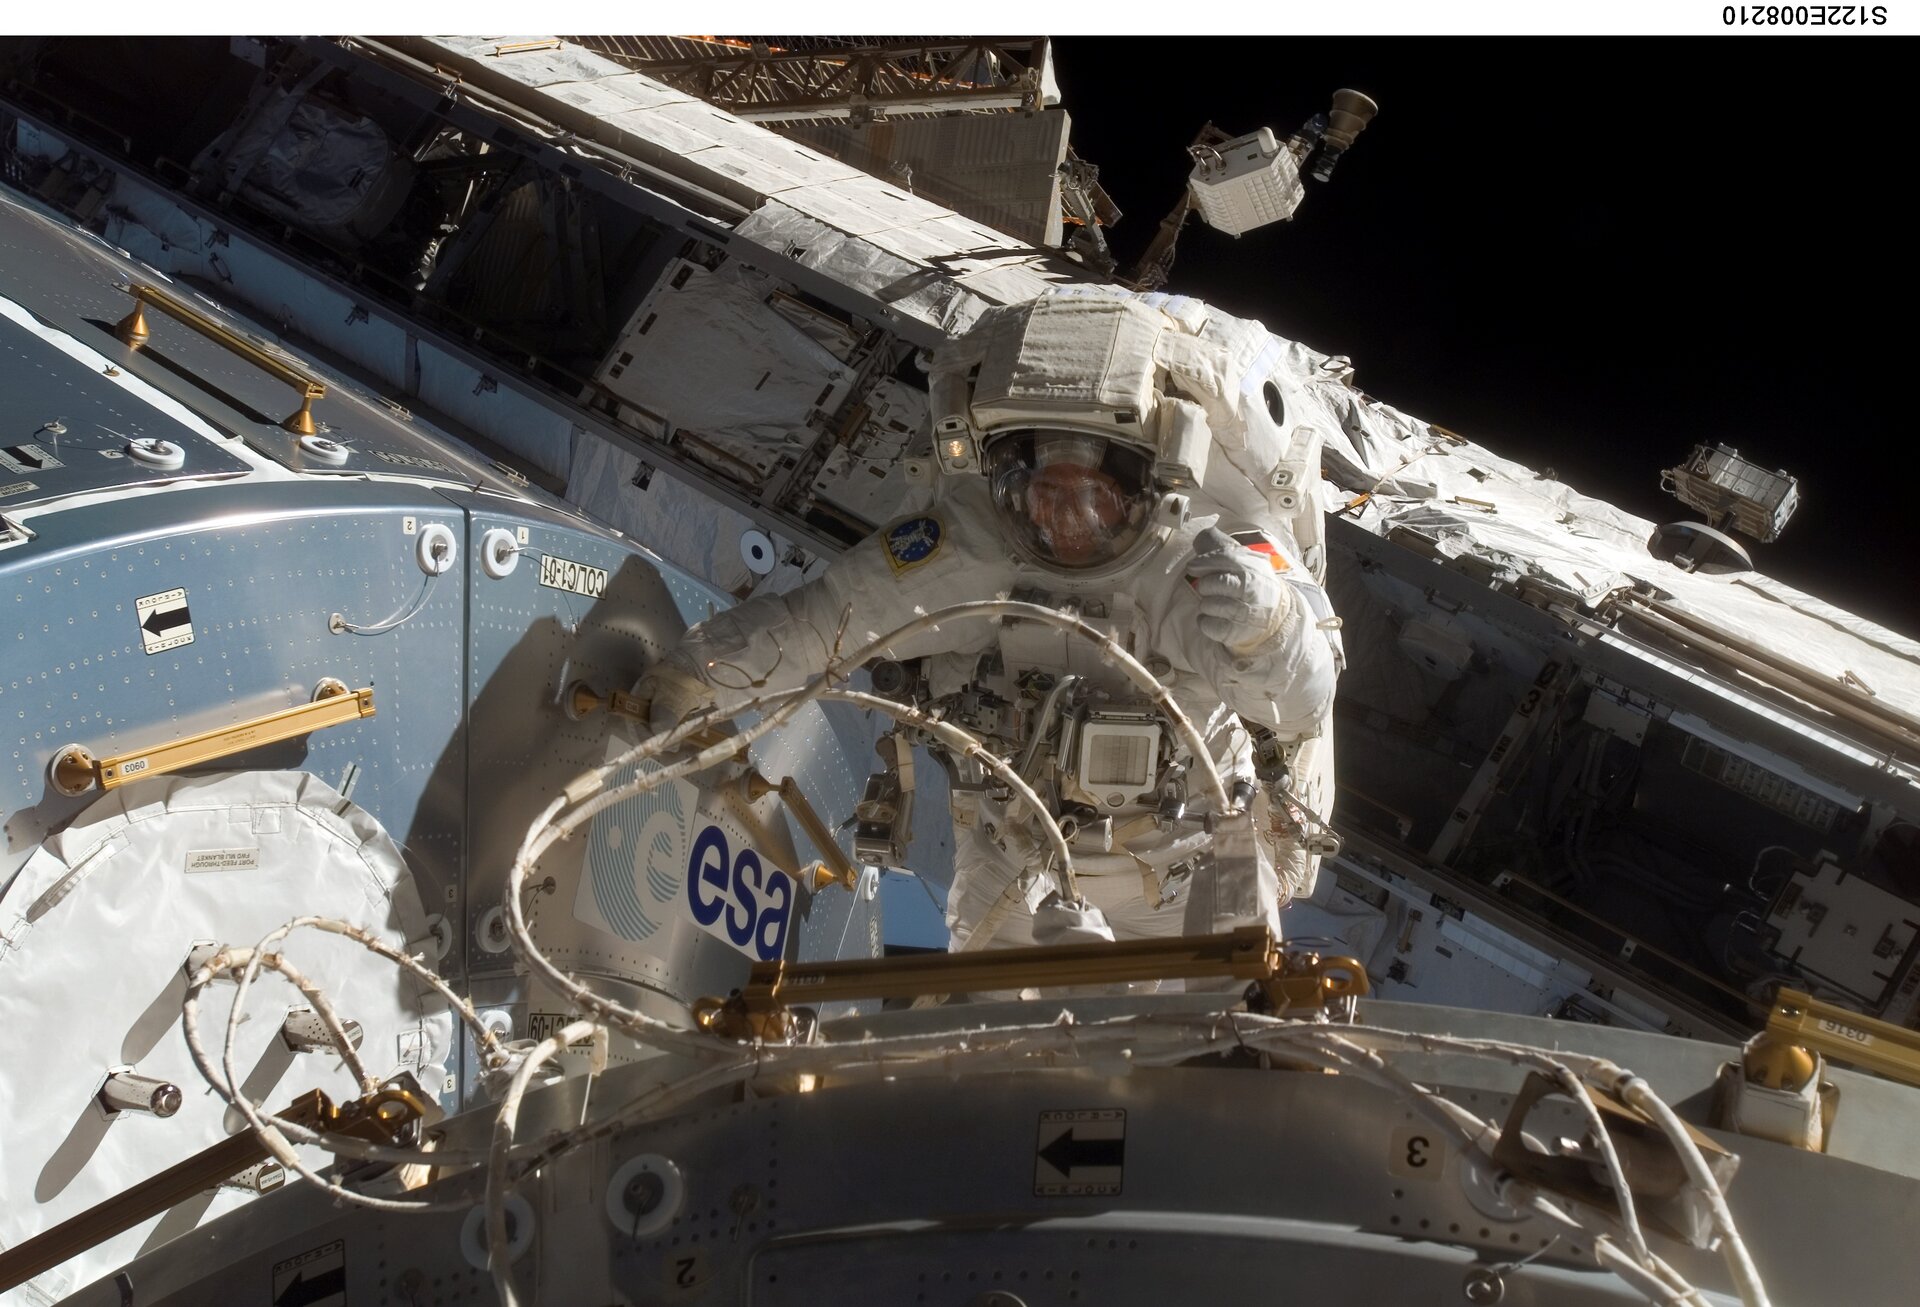 ESA astronaut Hans Schlegel during his first spacewalk